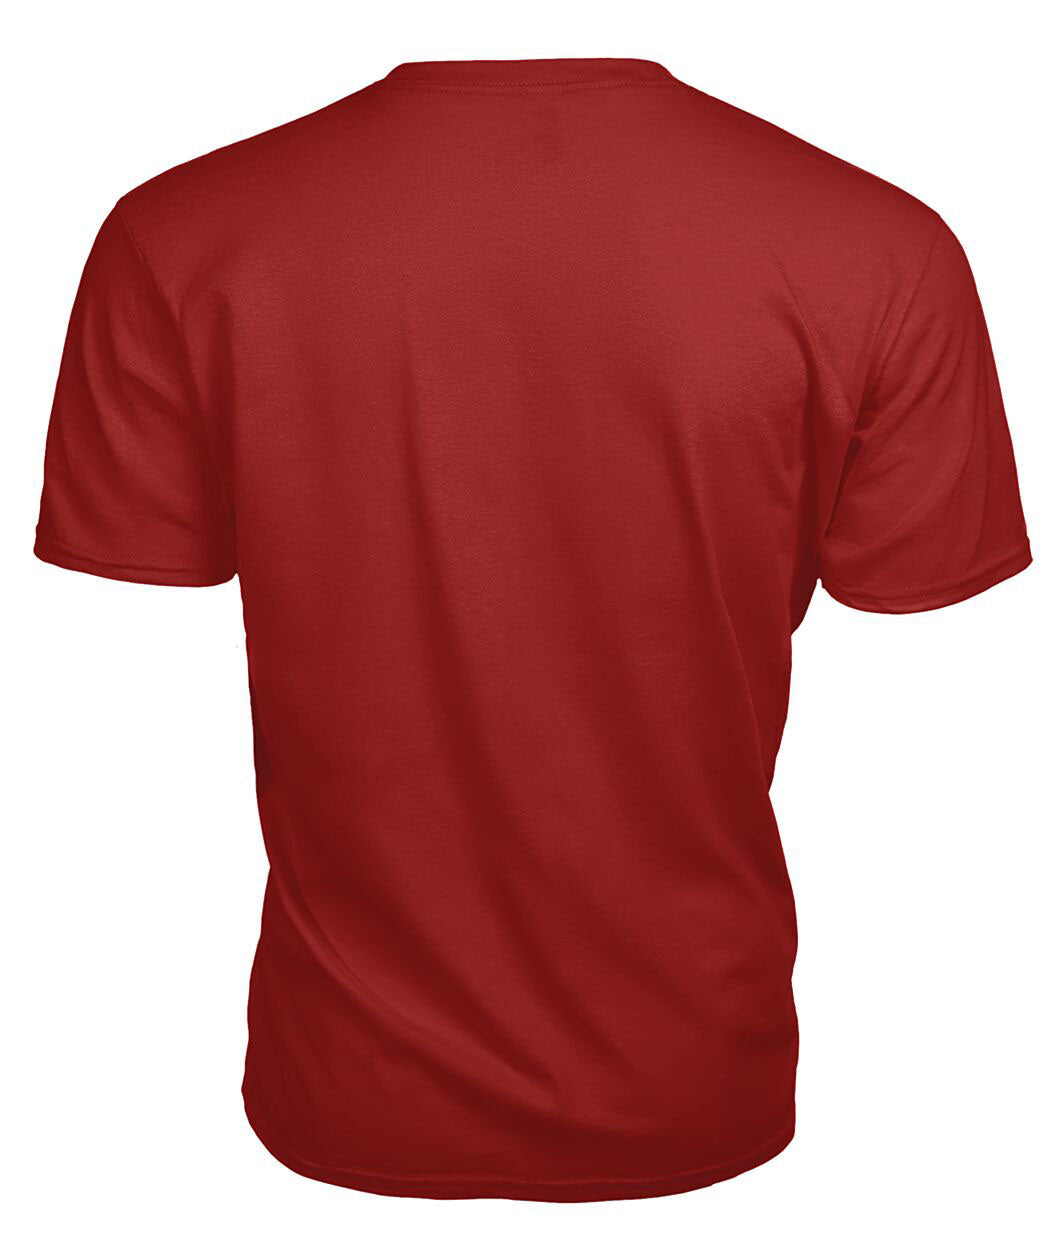 Sempill Modern Tartan Crest 2D T-shirt - Blood Runs Through My Veins Style